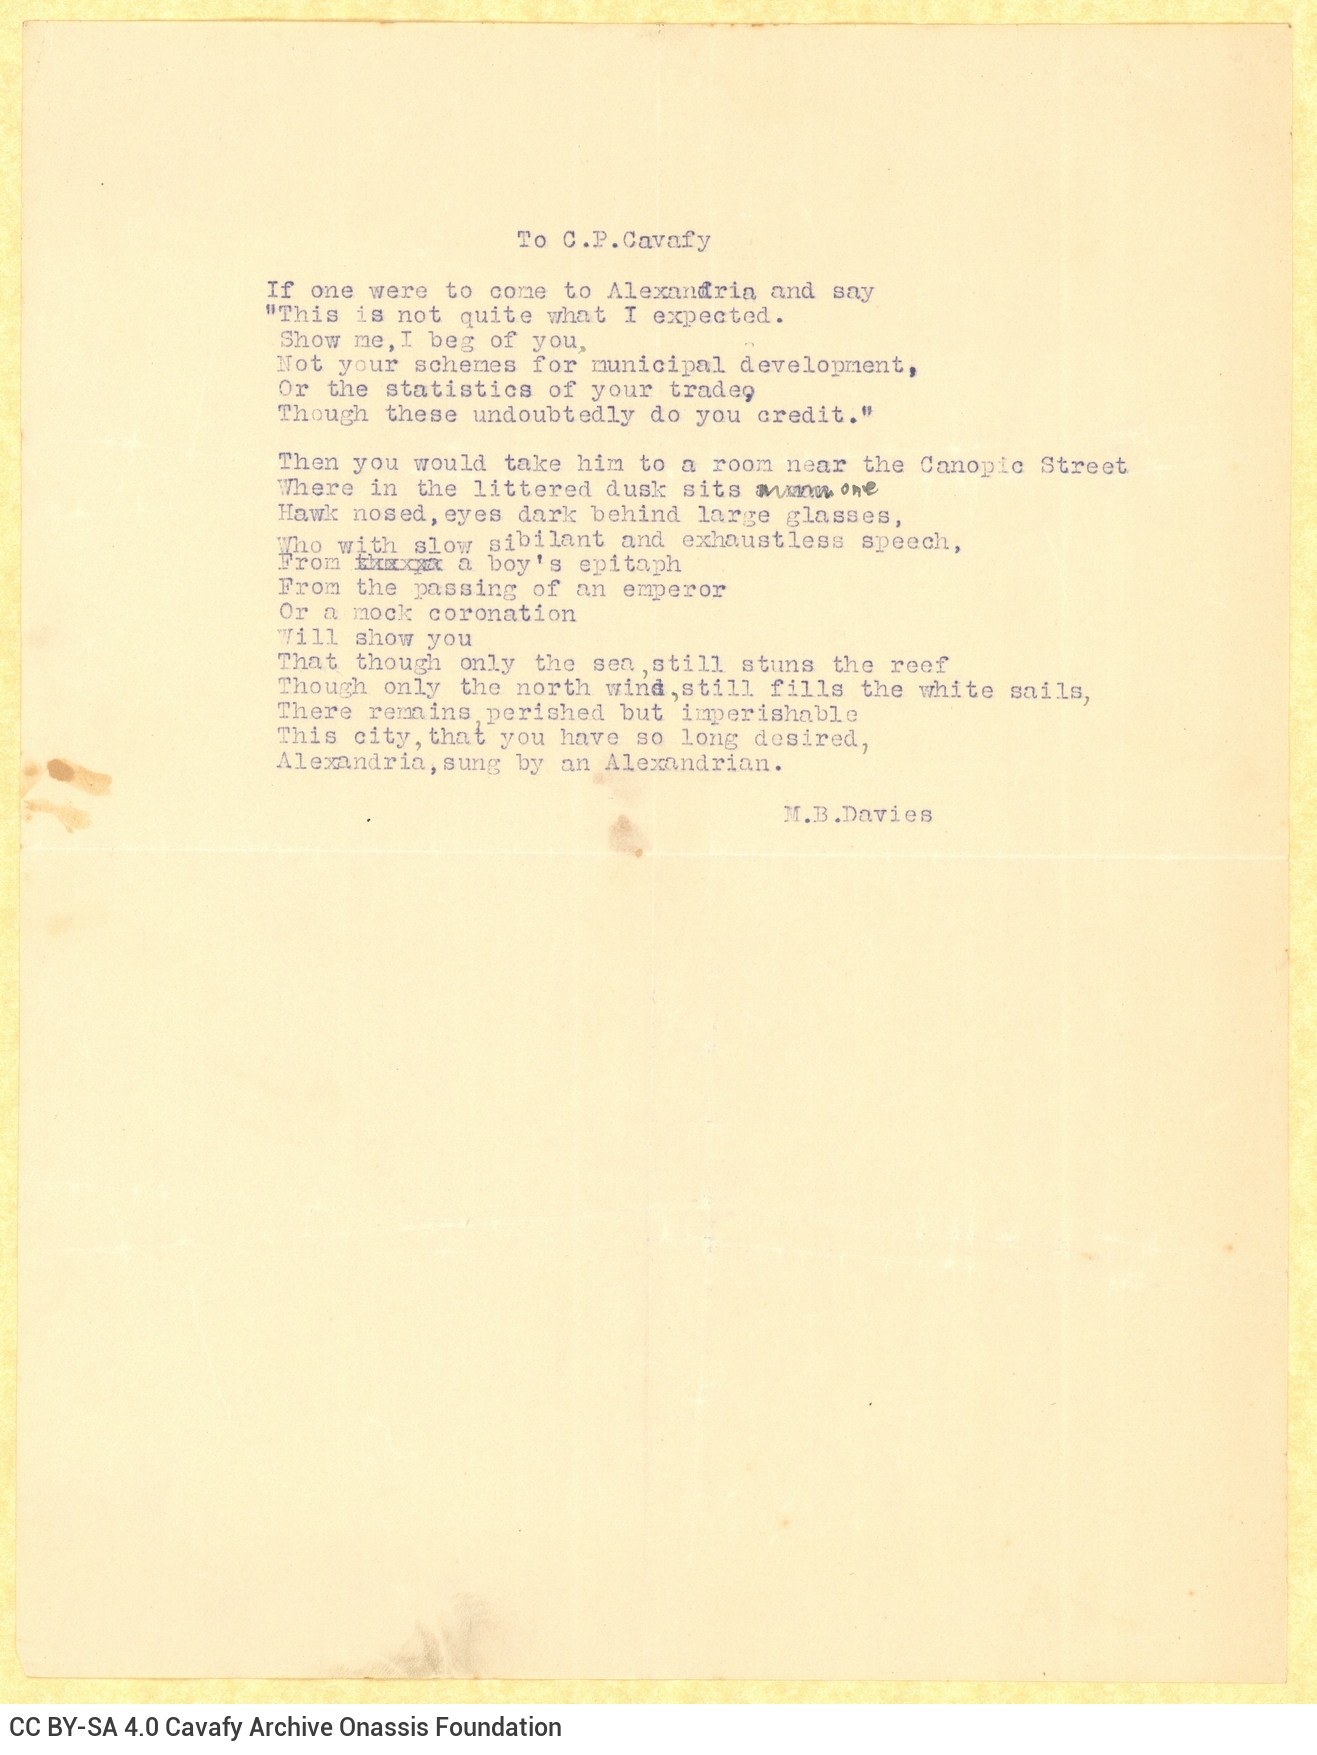 Typewritten poem by M. B. Davies in English; handwritten emendation.